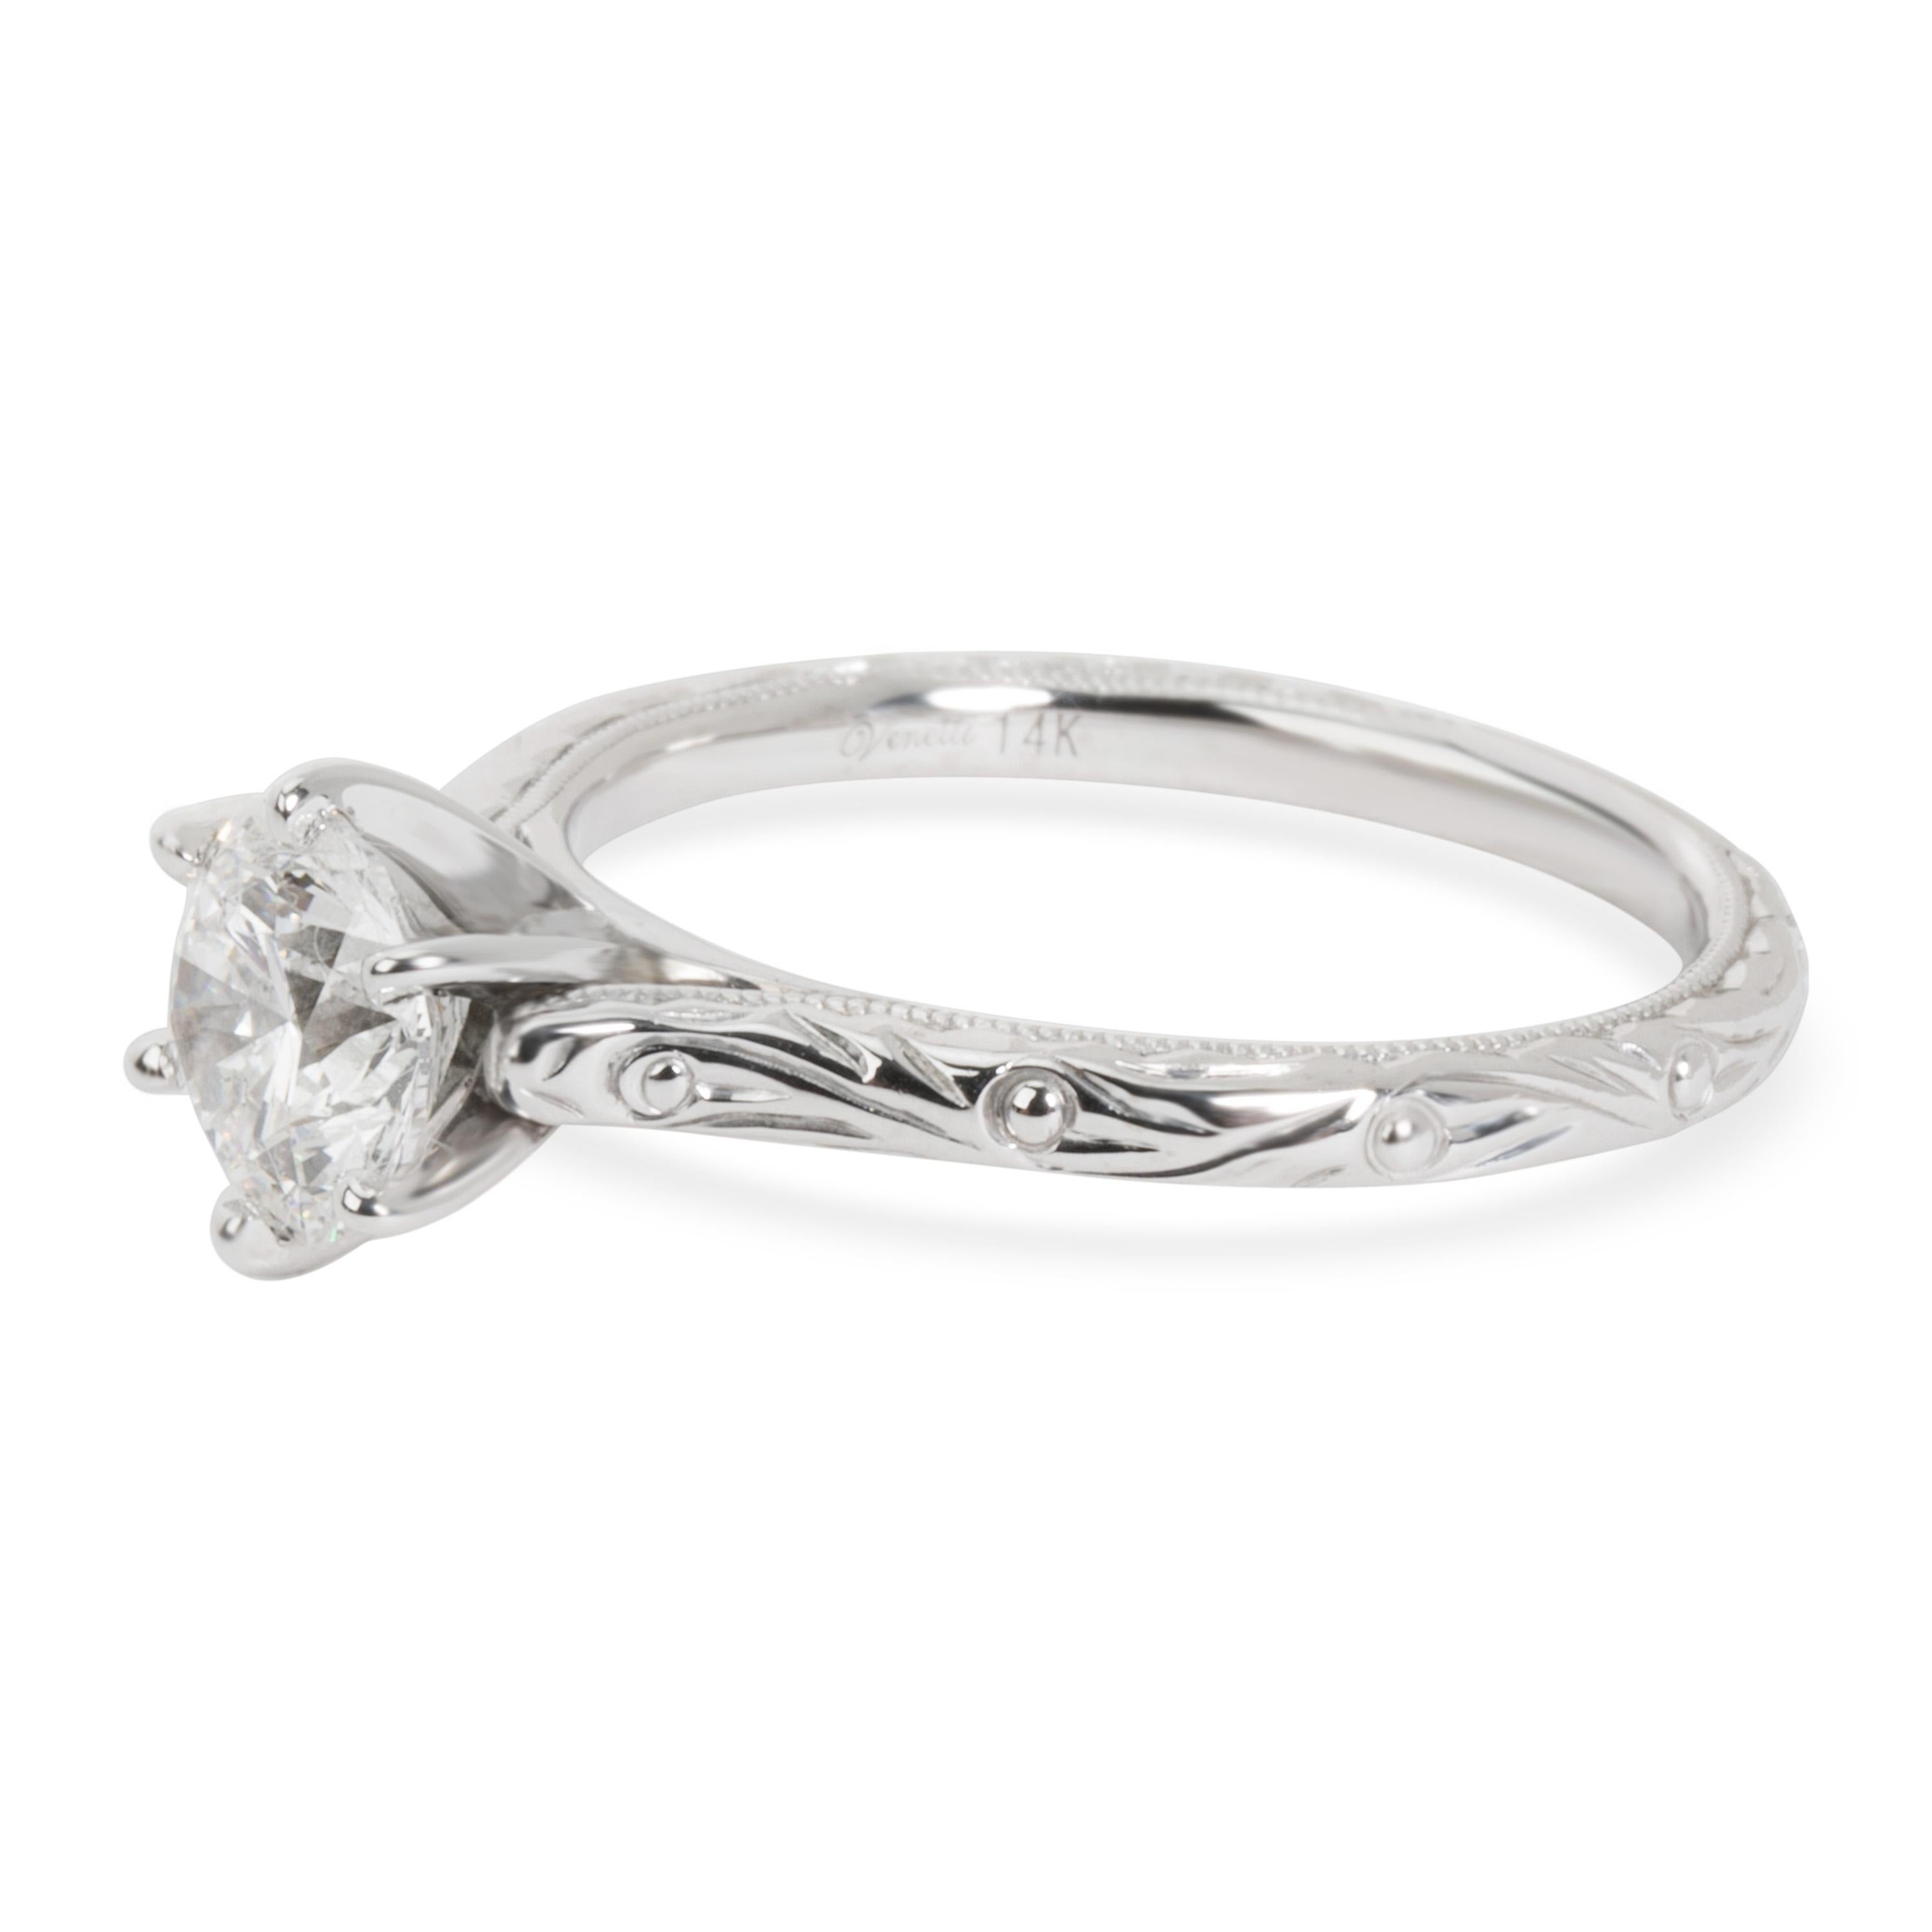 Round Cut GIA Certified Diamond Engagement Ring in 14 Karat White Gold 1.01 Carat